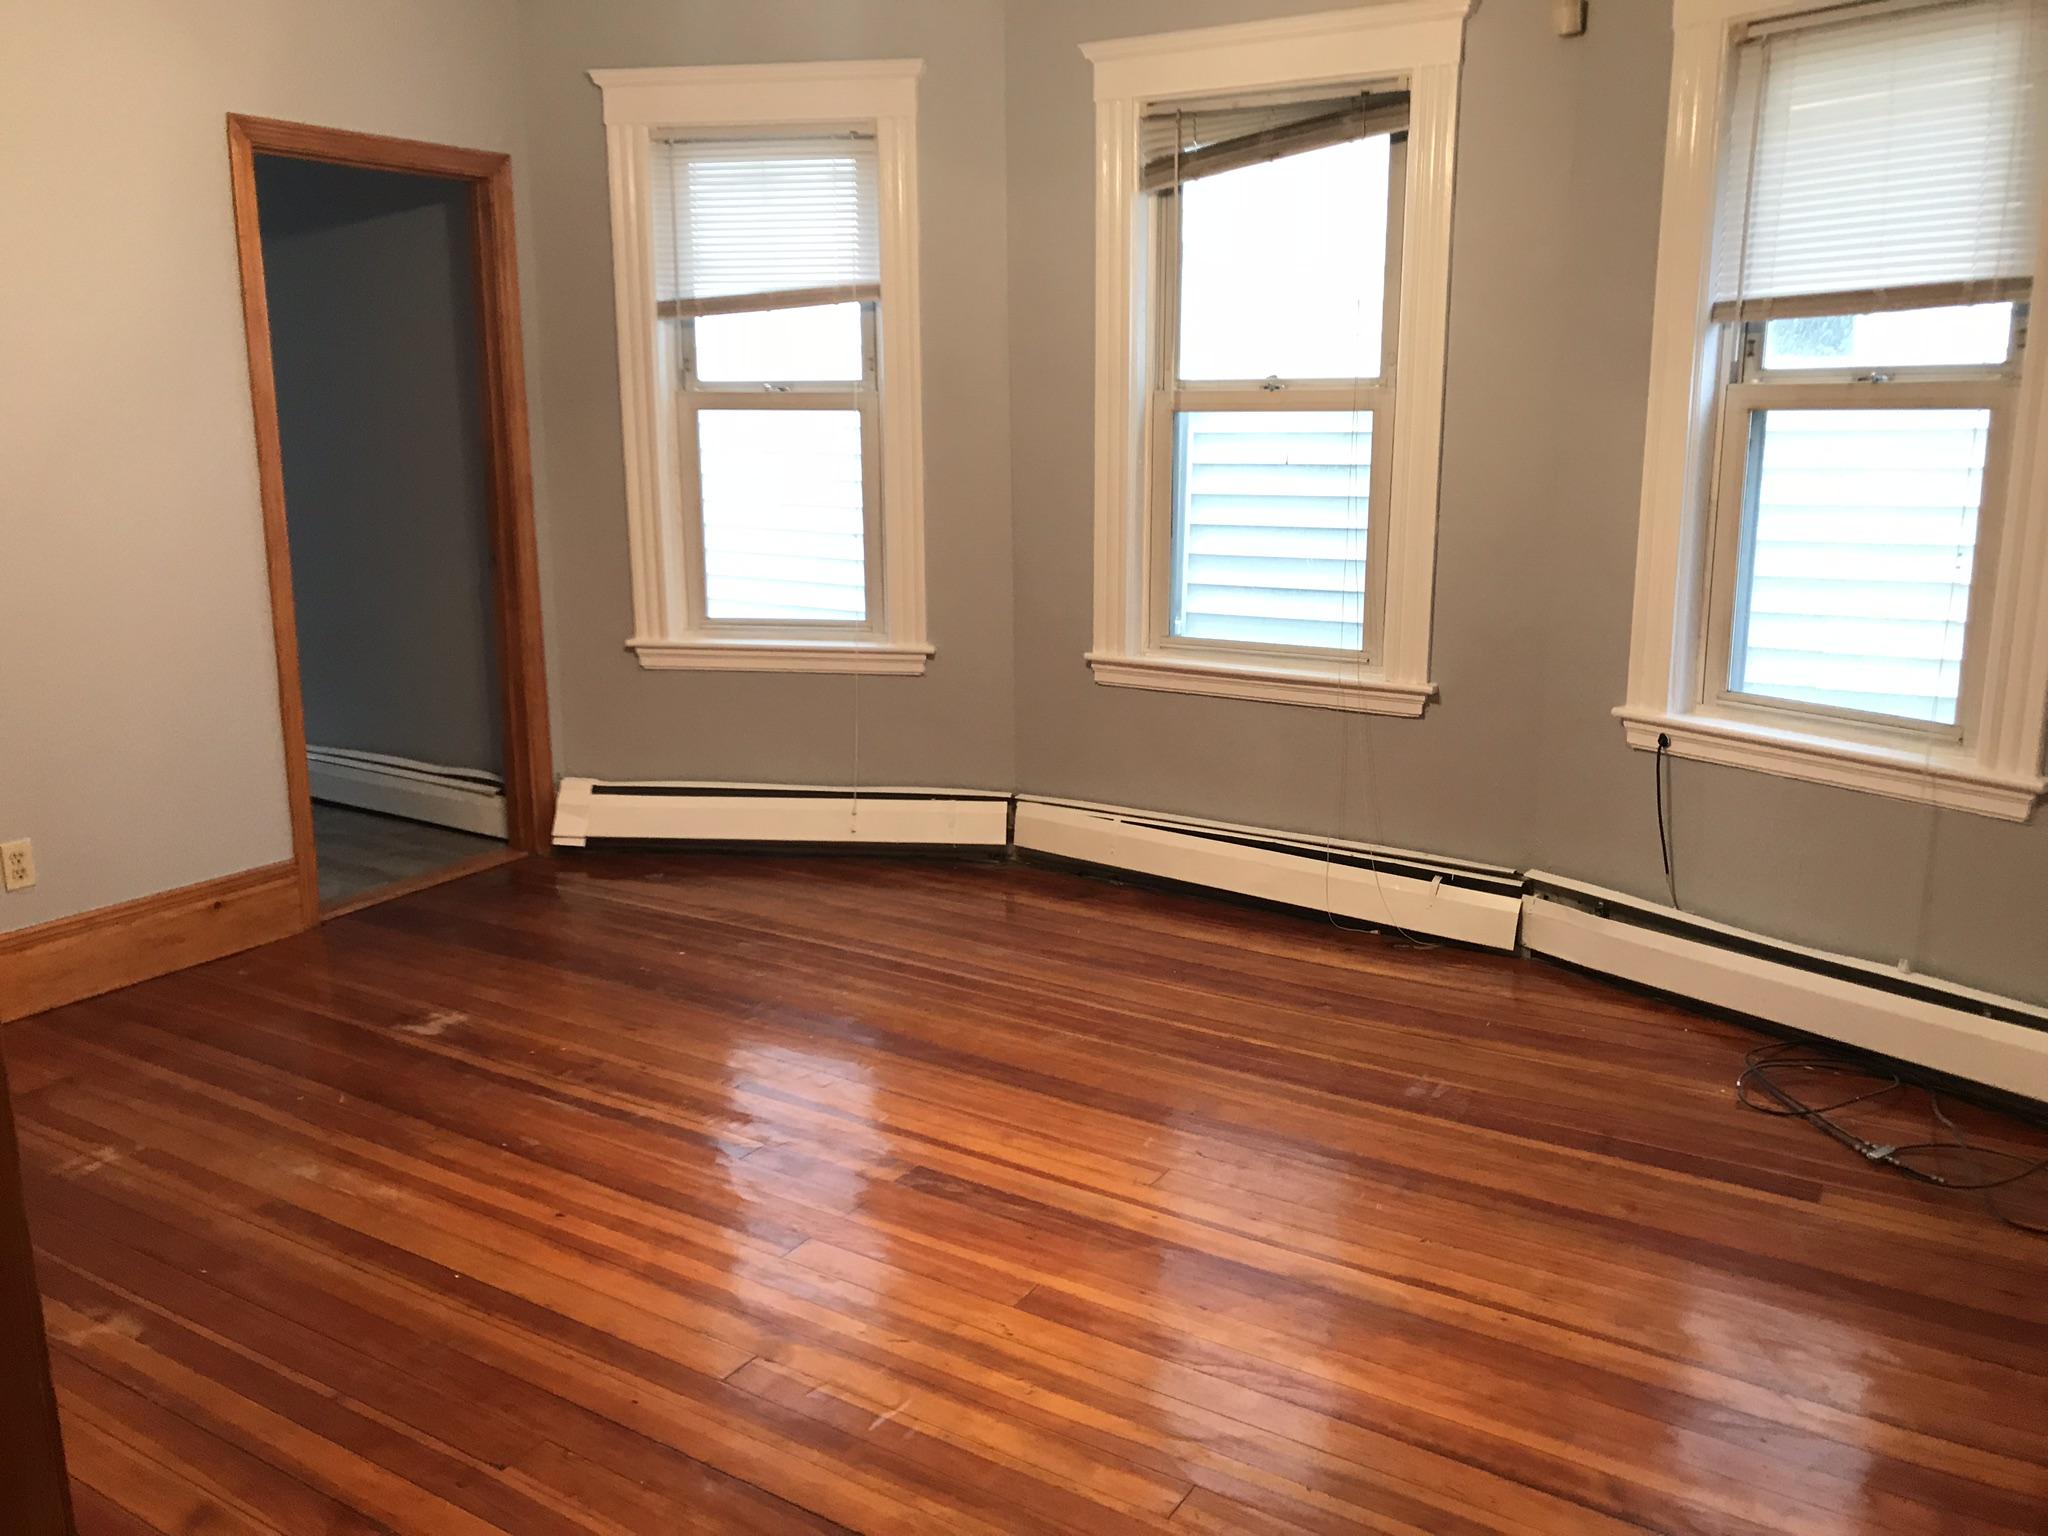 Photos of apartment on Mather,Boston MA 02124